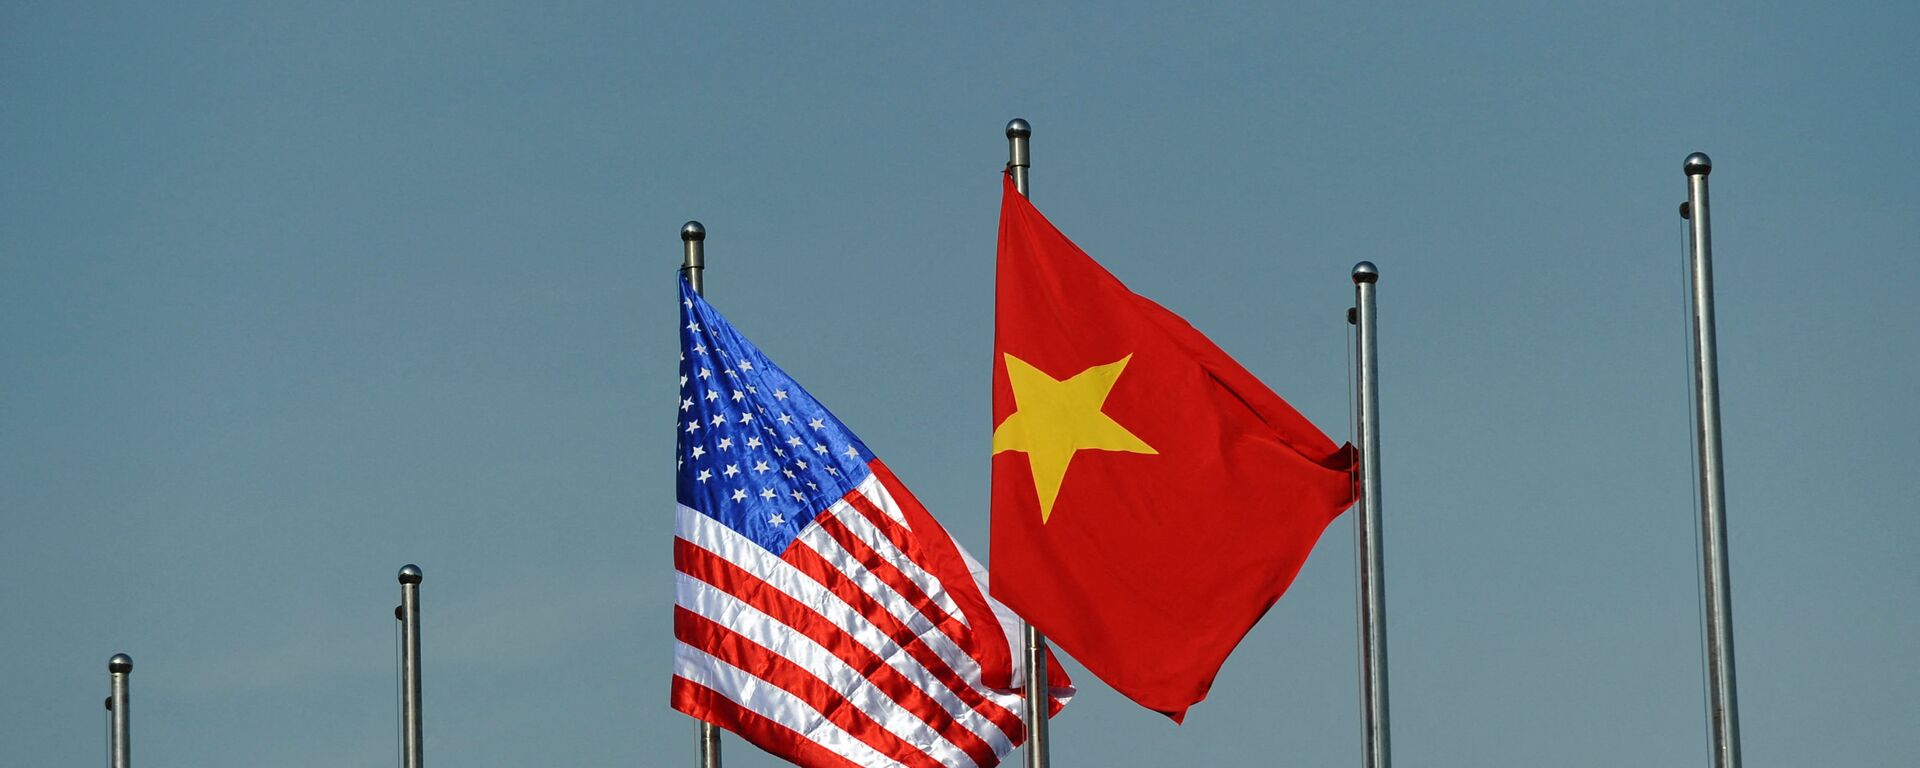 Quốc kỳ của Hoa Kỳ và Việt Nam. - Sputnik Việt Nam, 1920, 29.09.2021